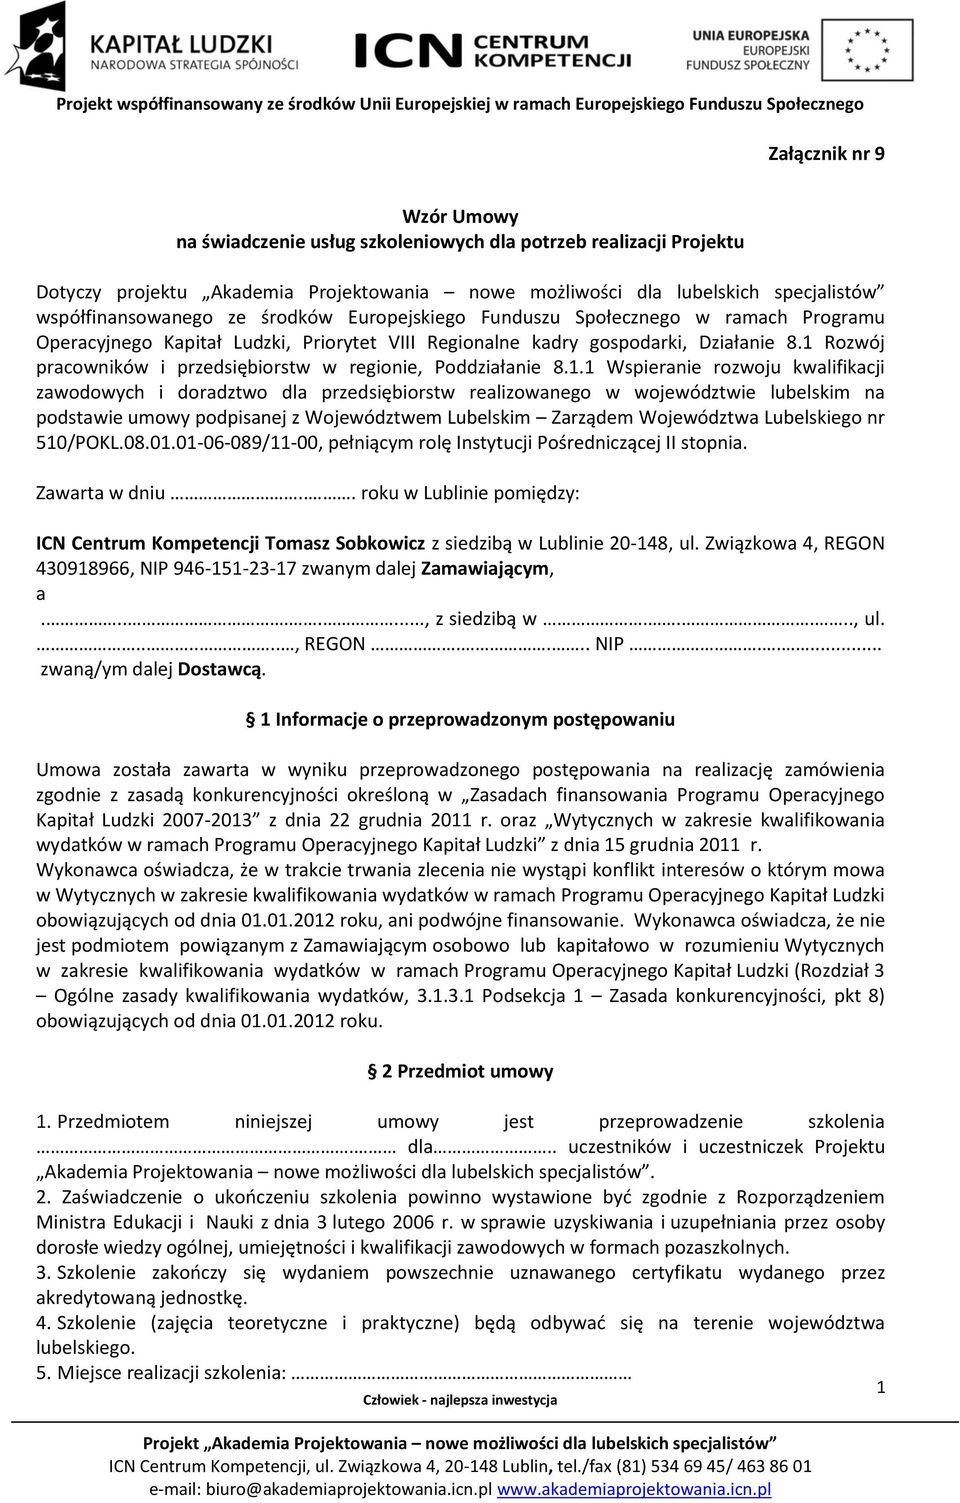 1 Rozwój pracowników i przedsiębiorstw w regionie, Poddziałanie 8.1.1 Wspieranie rozwoju kwalifikacji zawodowych i doradztwo dla przedsiębiorstw realizowanego w województwie lubelskim na podstawie